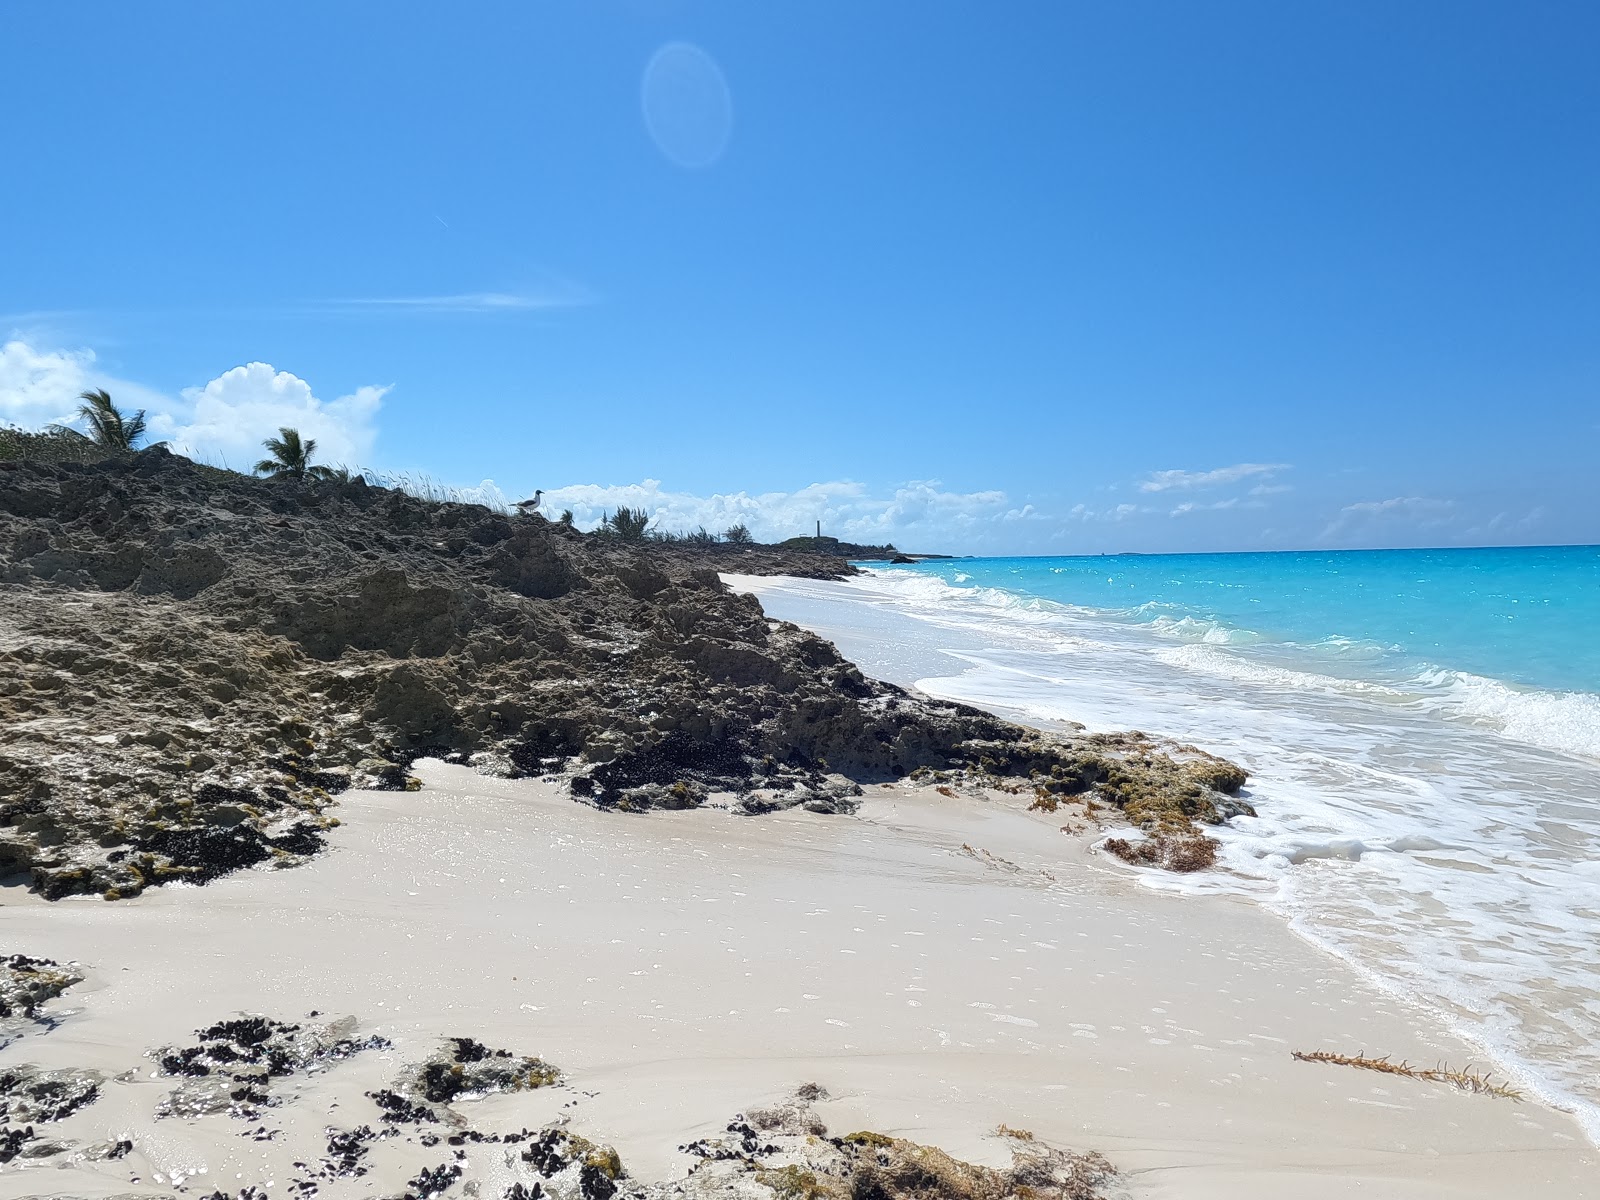 Zdjęcie Santanna's beach z powierzchnią jasny piasek i skały